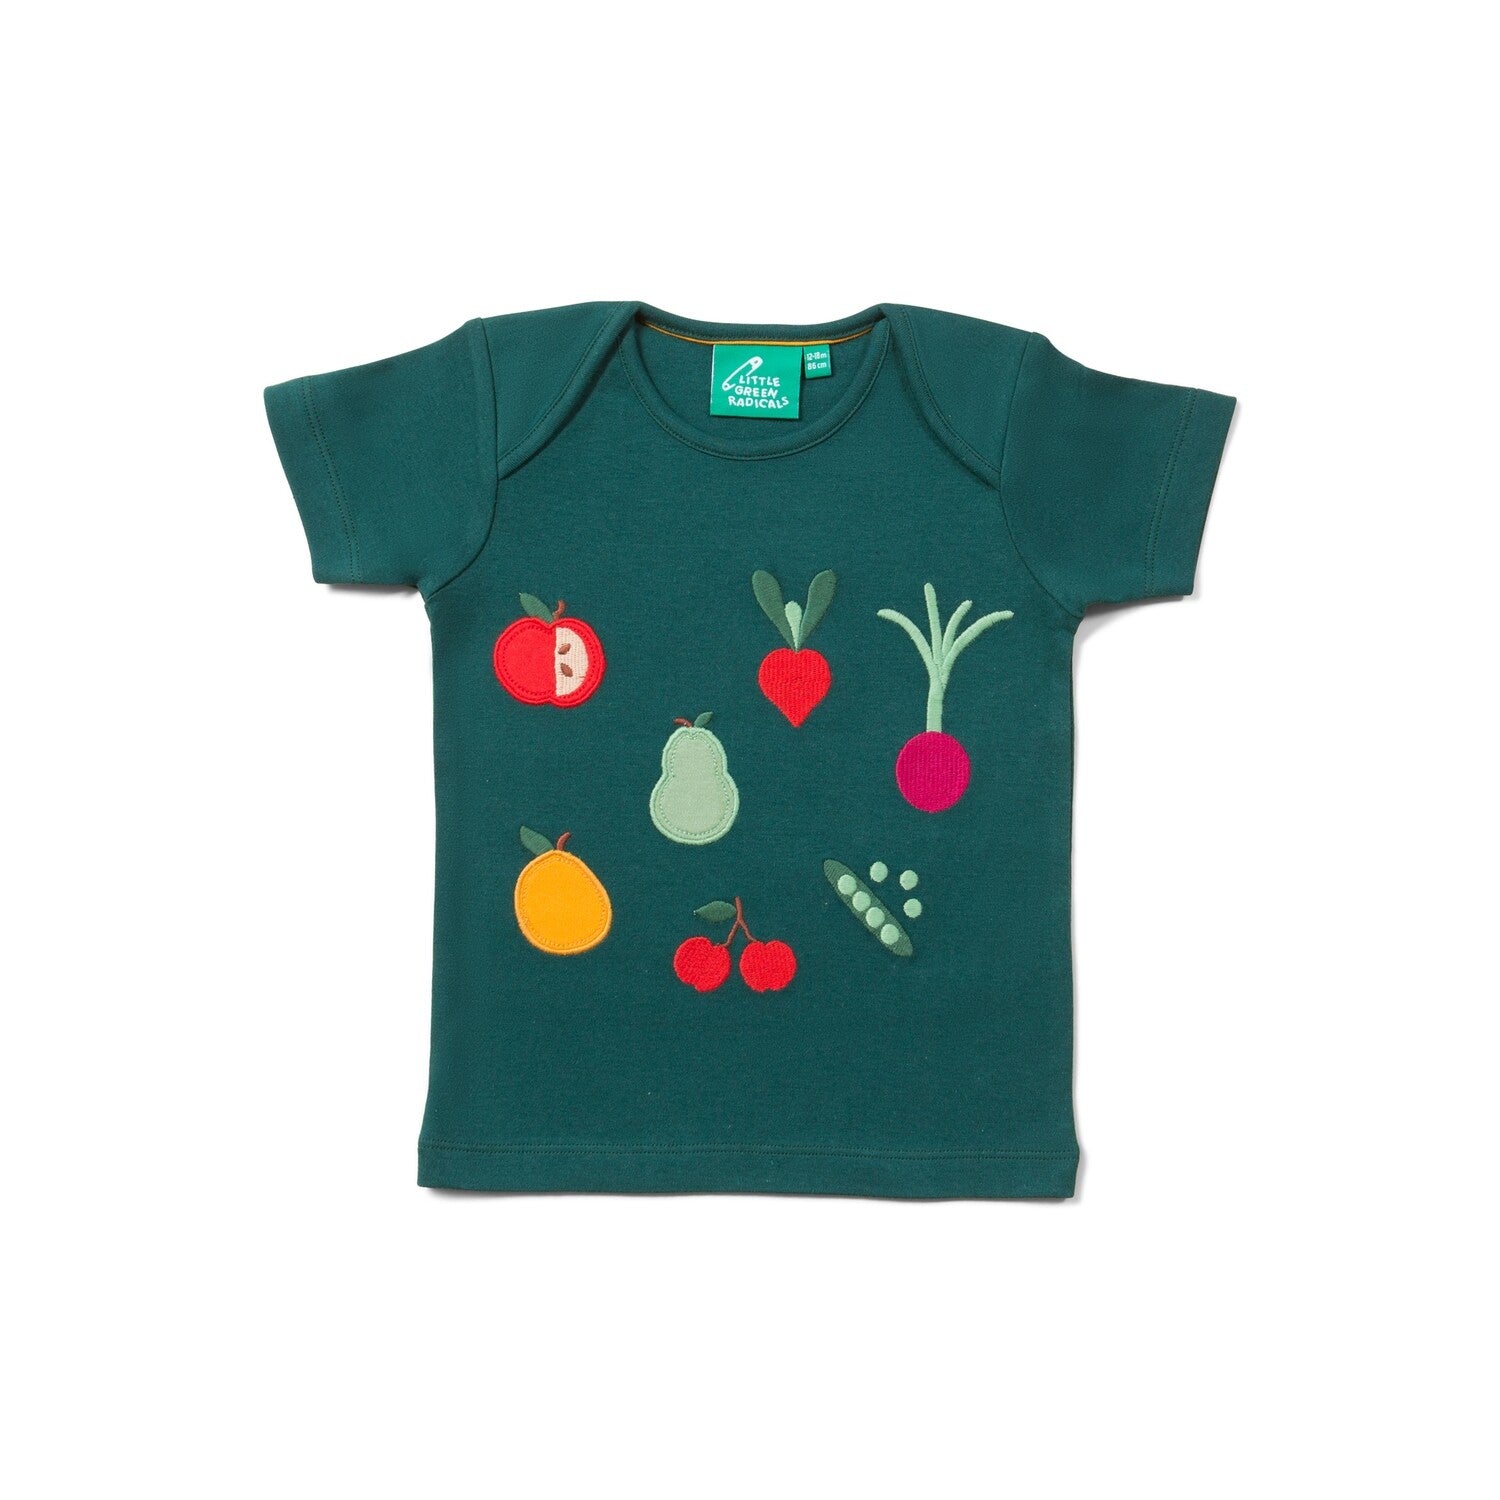 Tamsiai žali vaikiški marškinėliai trumpomis rankovėmis, siuvinėtos vaisių ir daržovių aplikacijos ant priekio. 